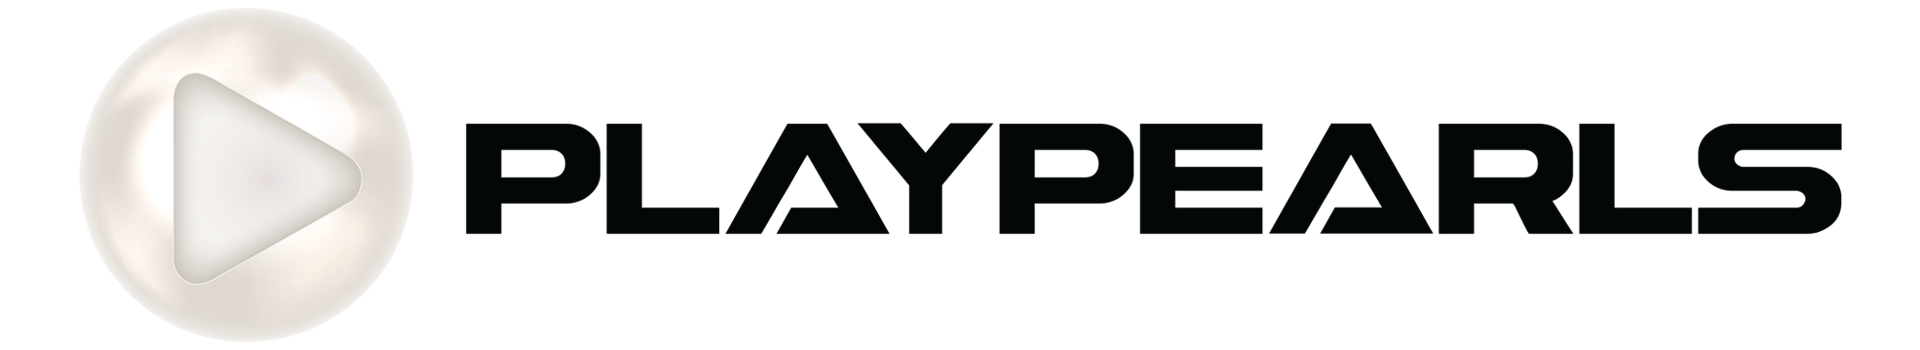 PlayPearls logo.png